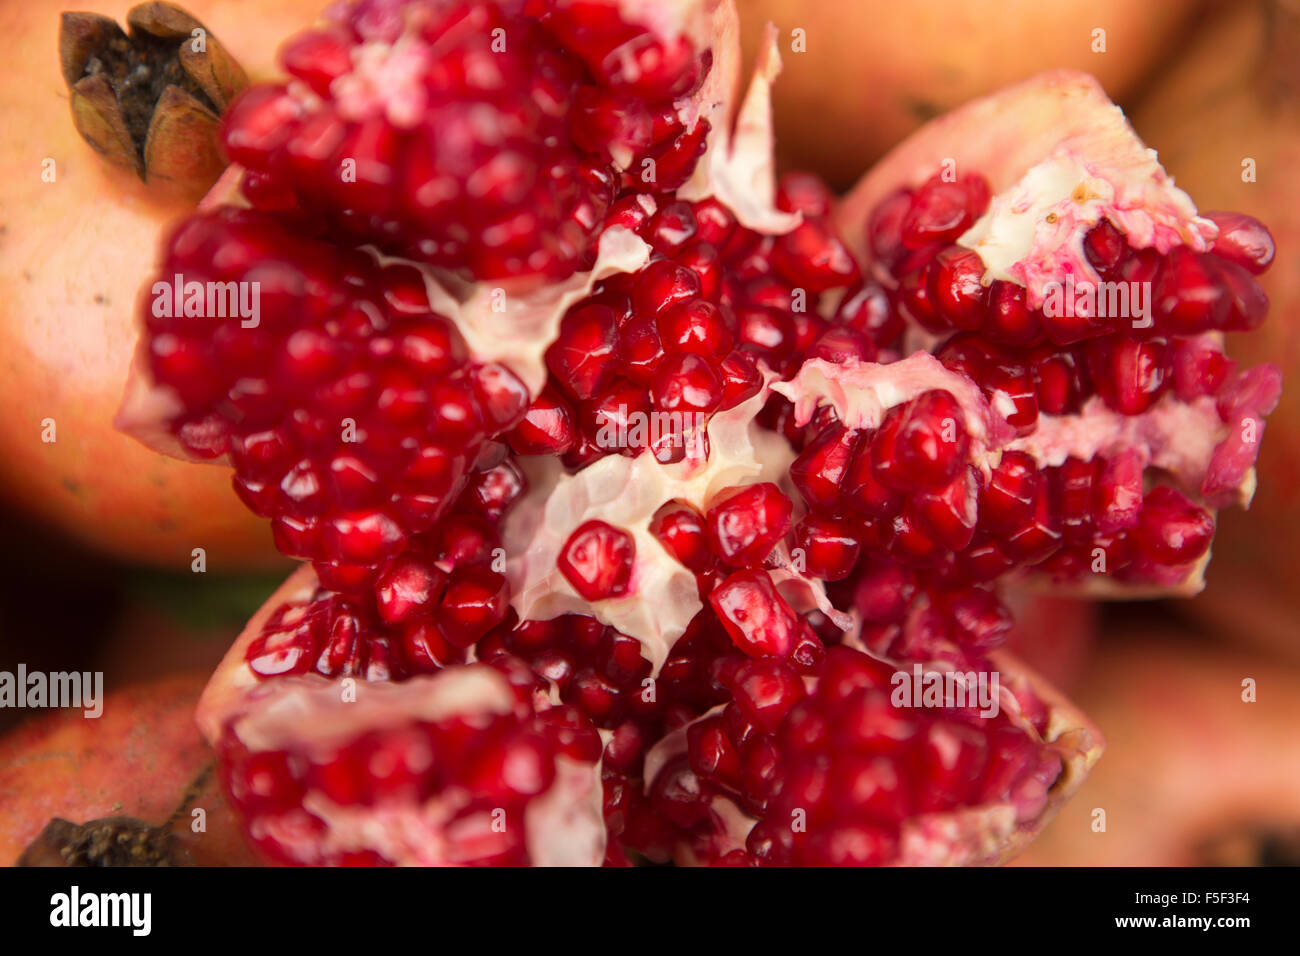 Indien, Himachal Pradesh, Shimla (Simla), Granatapfel Split offen, leuchtende rote Samen zu offenbaren Stockfoto